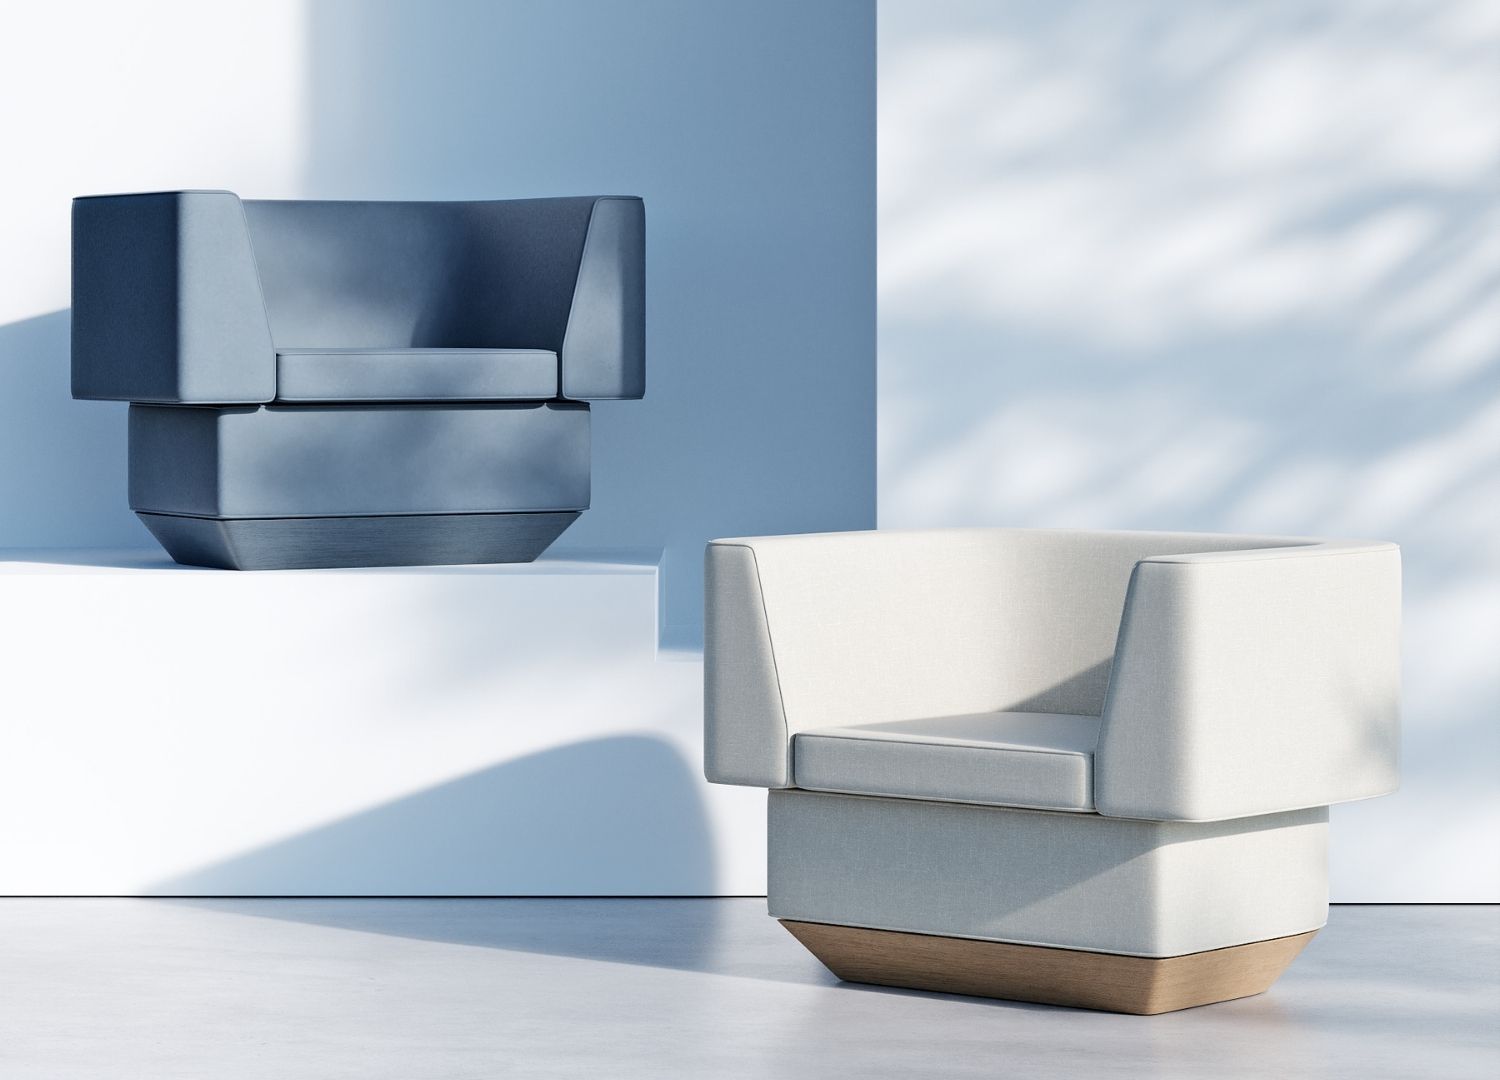 Brick sofa by João Teixeira _ Concept design